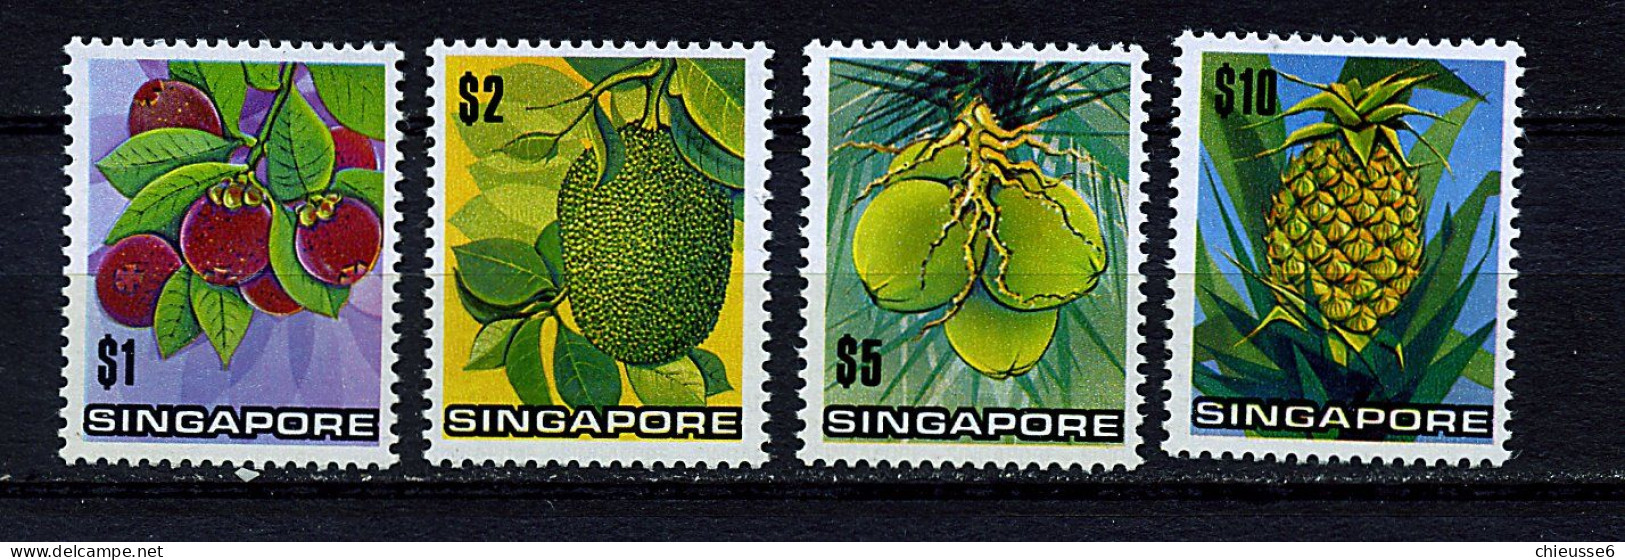 Singapour ** N° 1794 à 1798 - Fruits - Singapour (1959-...)